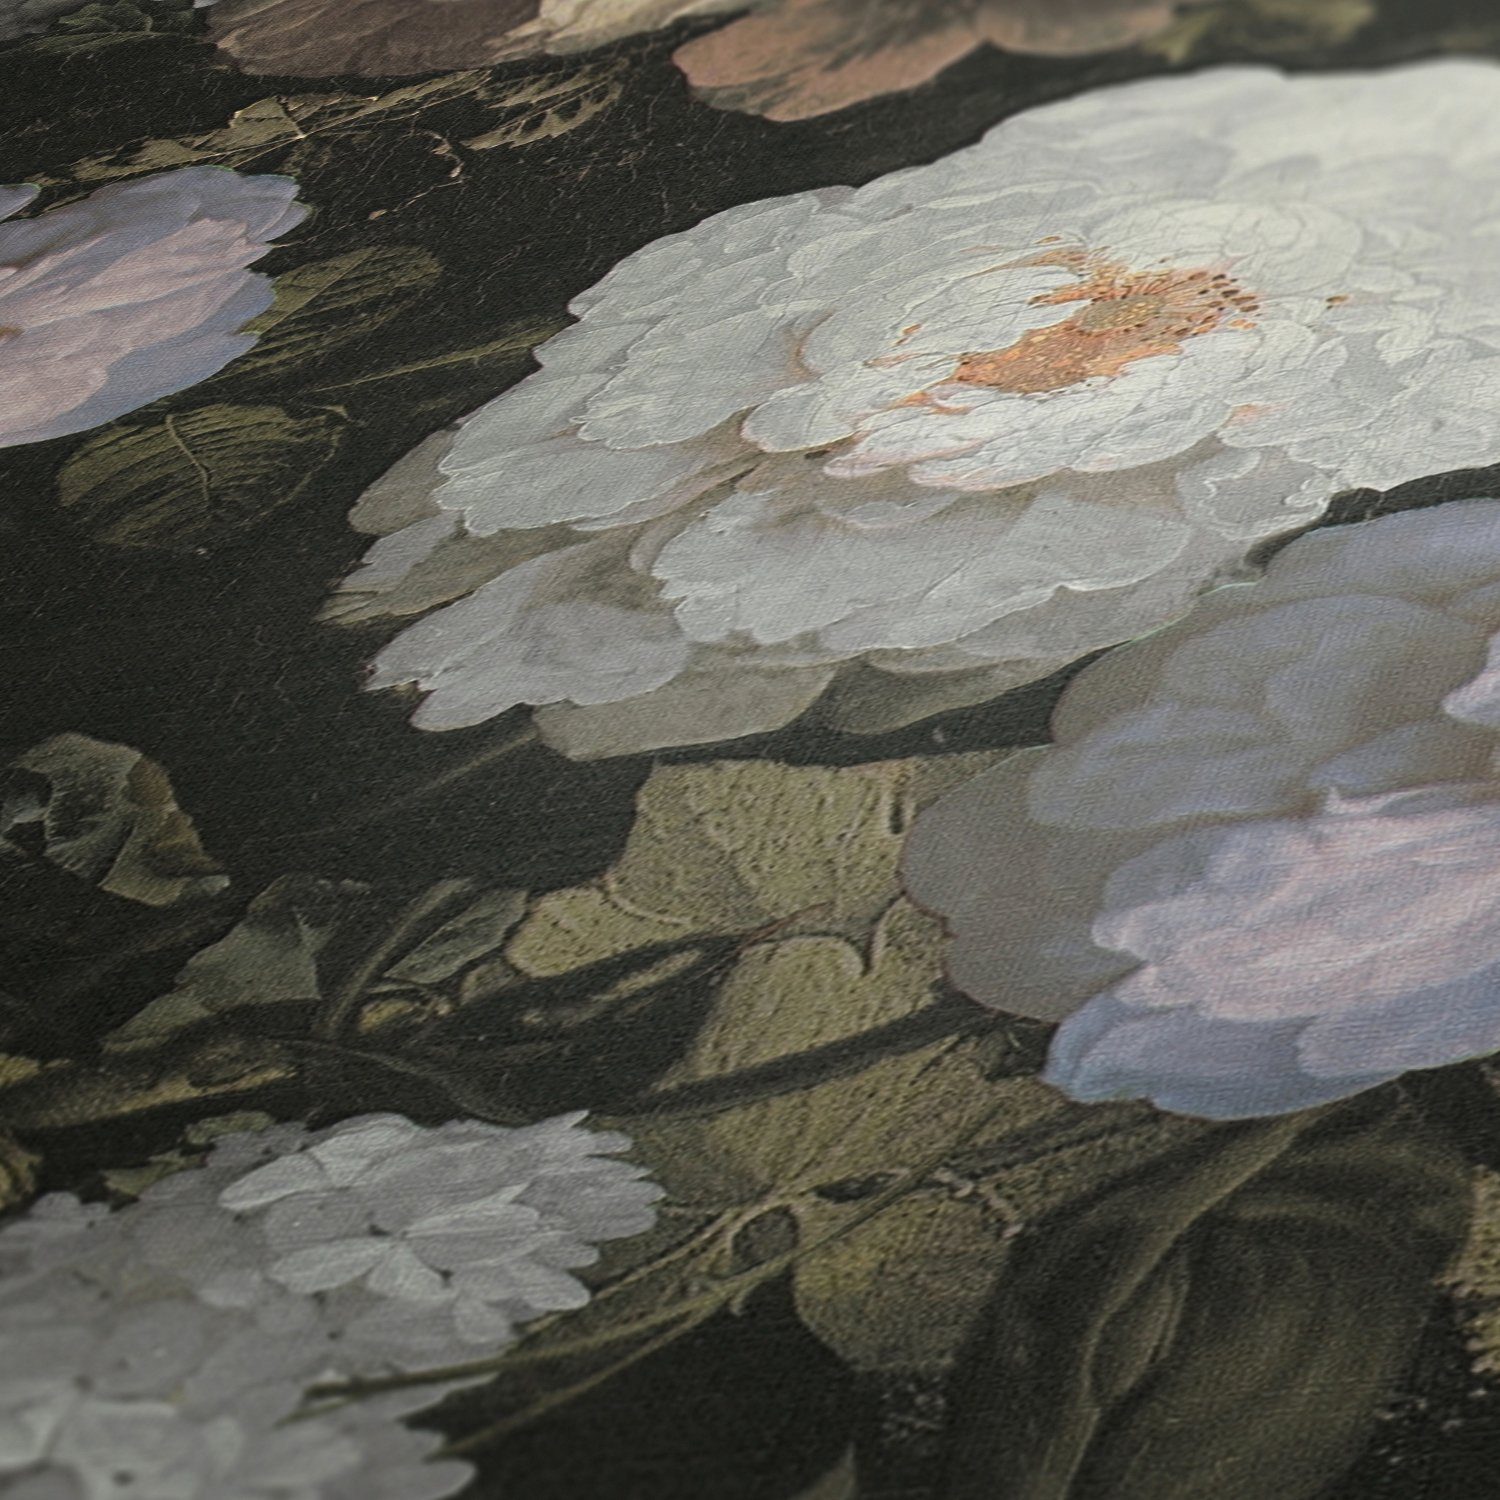 Tapete botanisch, A.S. Blumen of History floral, Création rosa/grün/weiß Vliestapete Art,